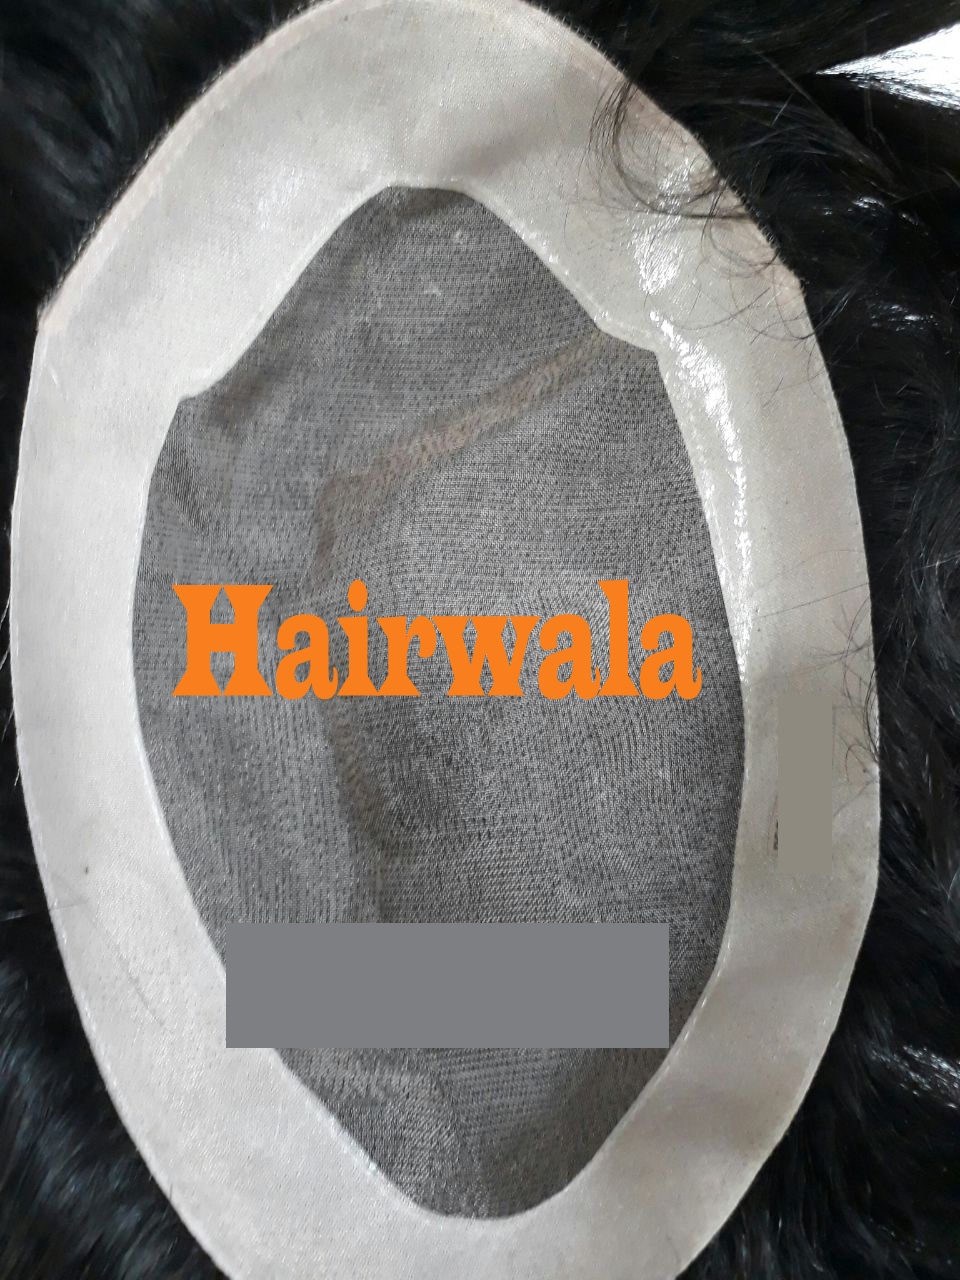 Hair Wig In Ahmedabad